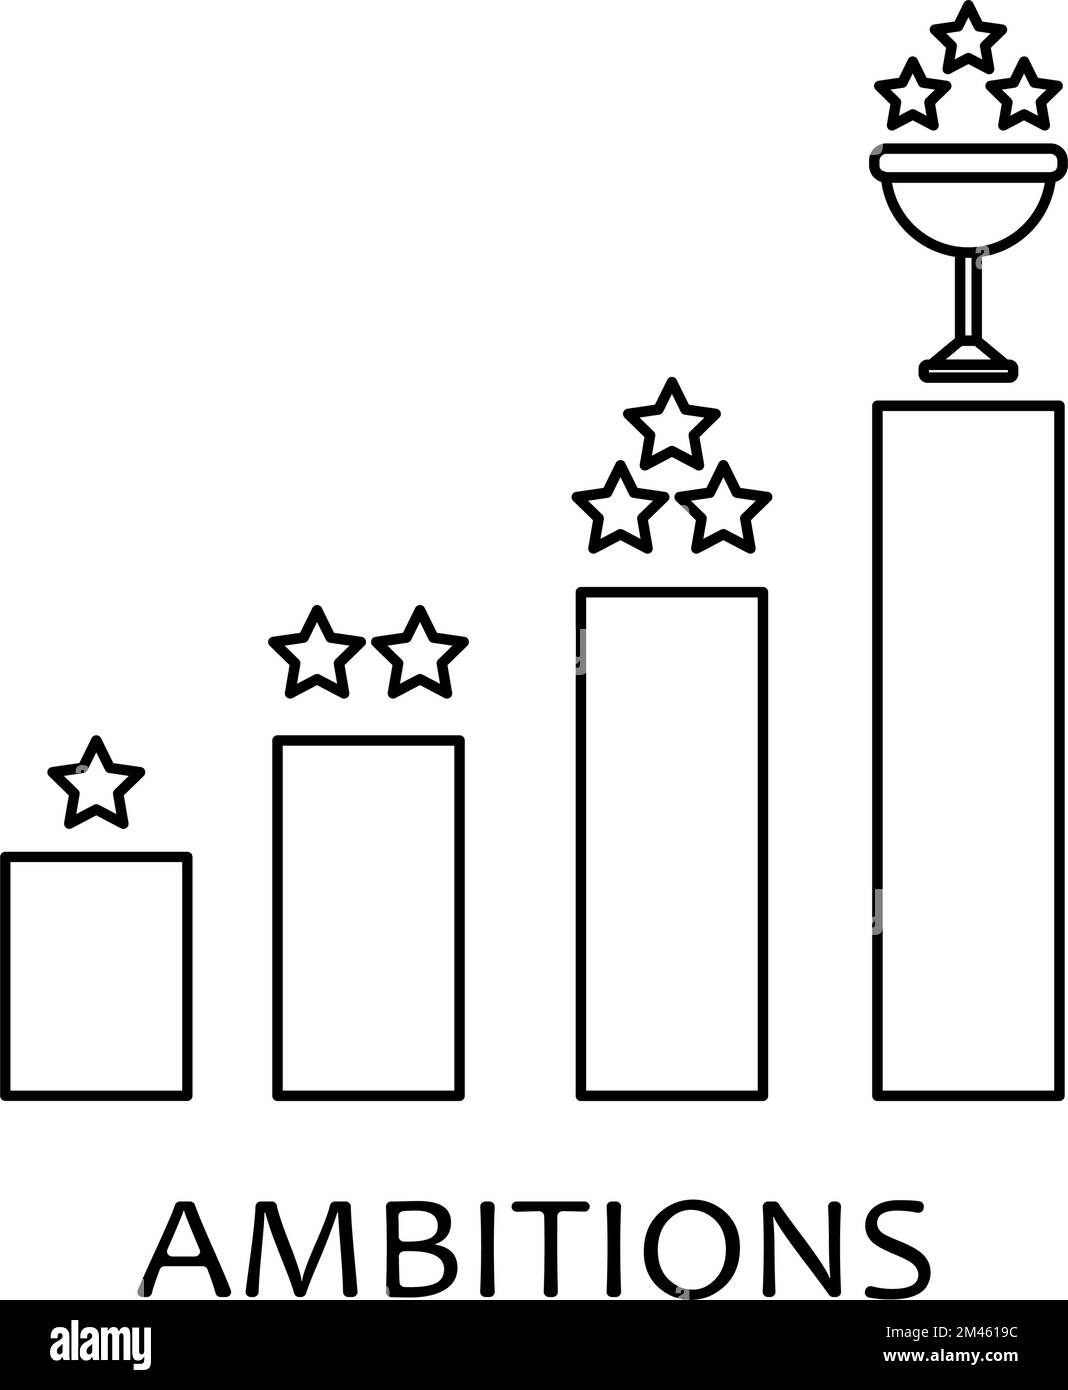 Liniensymbol für Ambition Steps. Karrieremotivitäts-Arrow-Konzeptdarstellung Stock Vektor